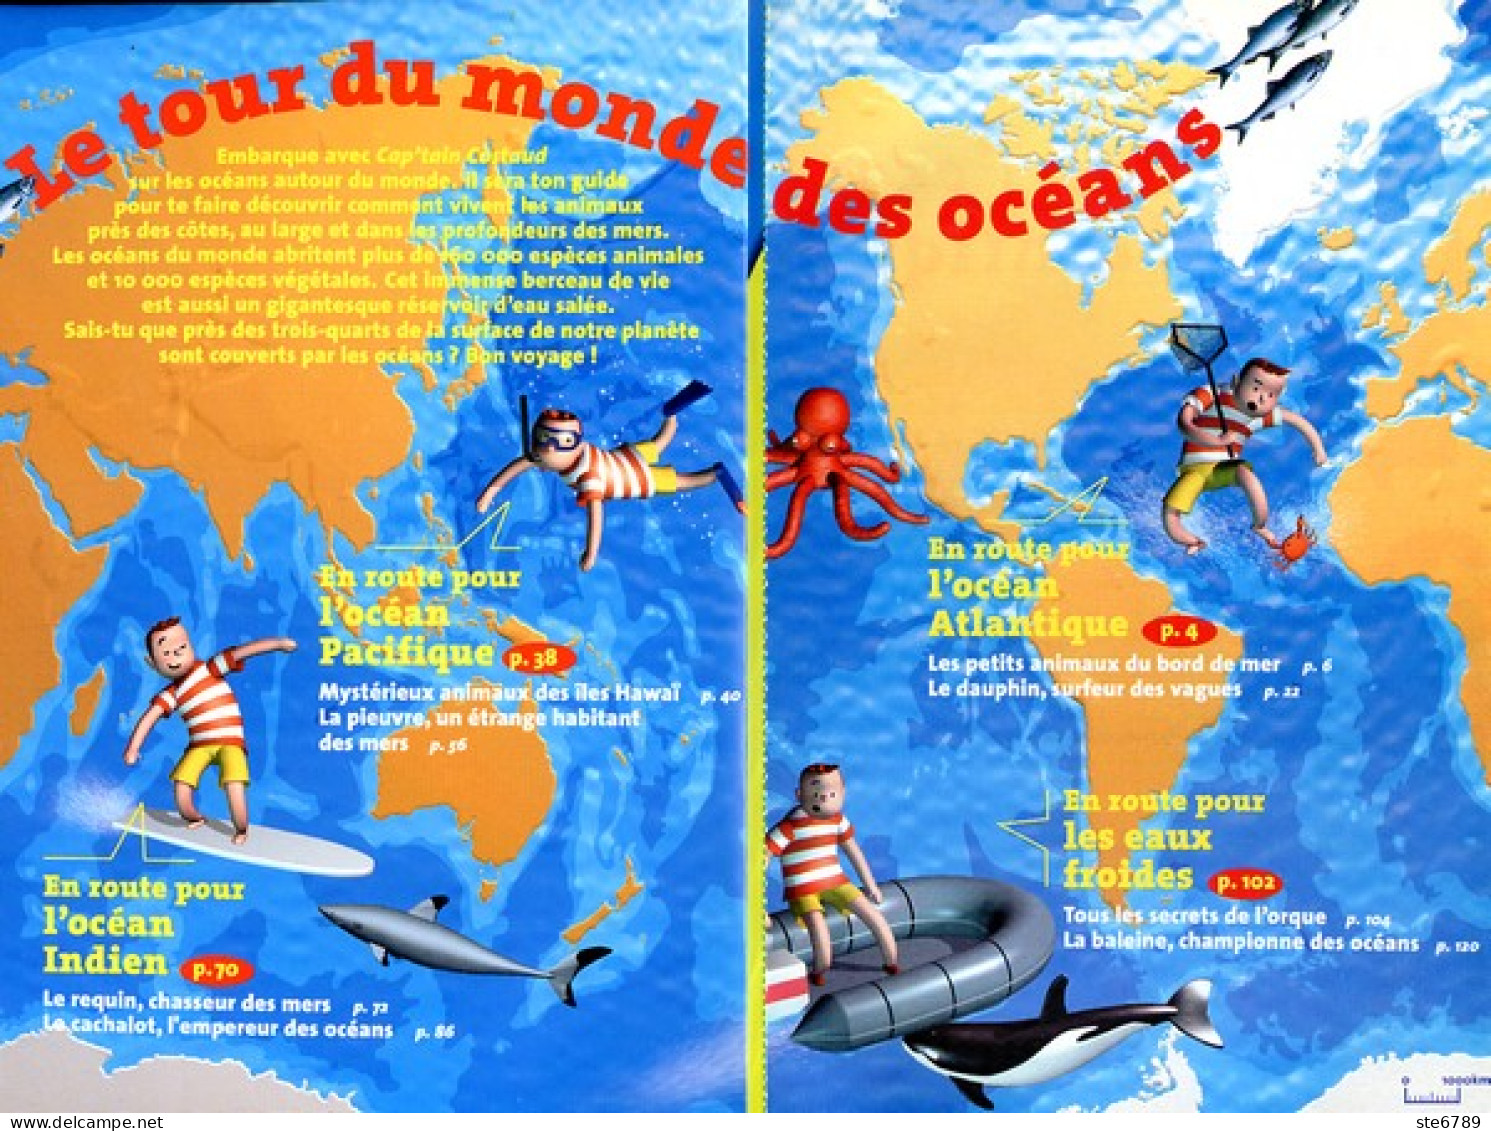 Cartes imagier animaux - mers et océans